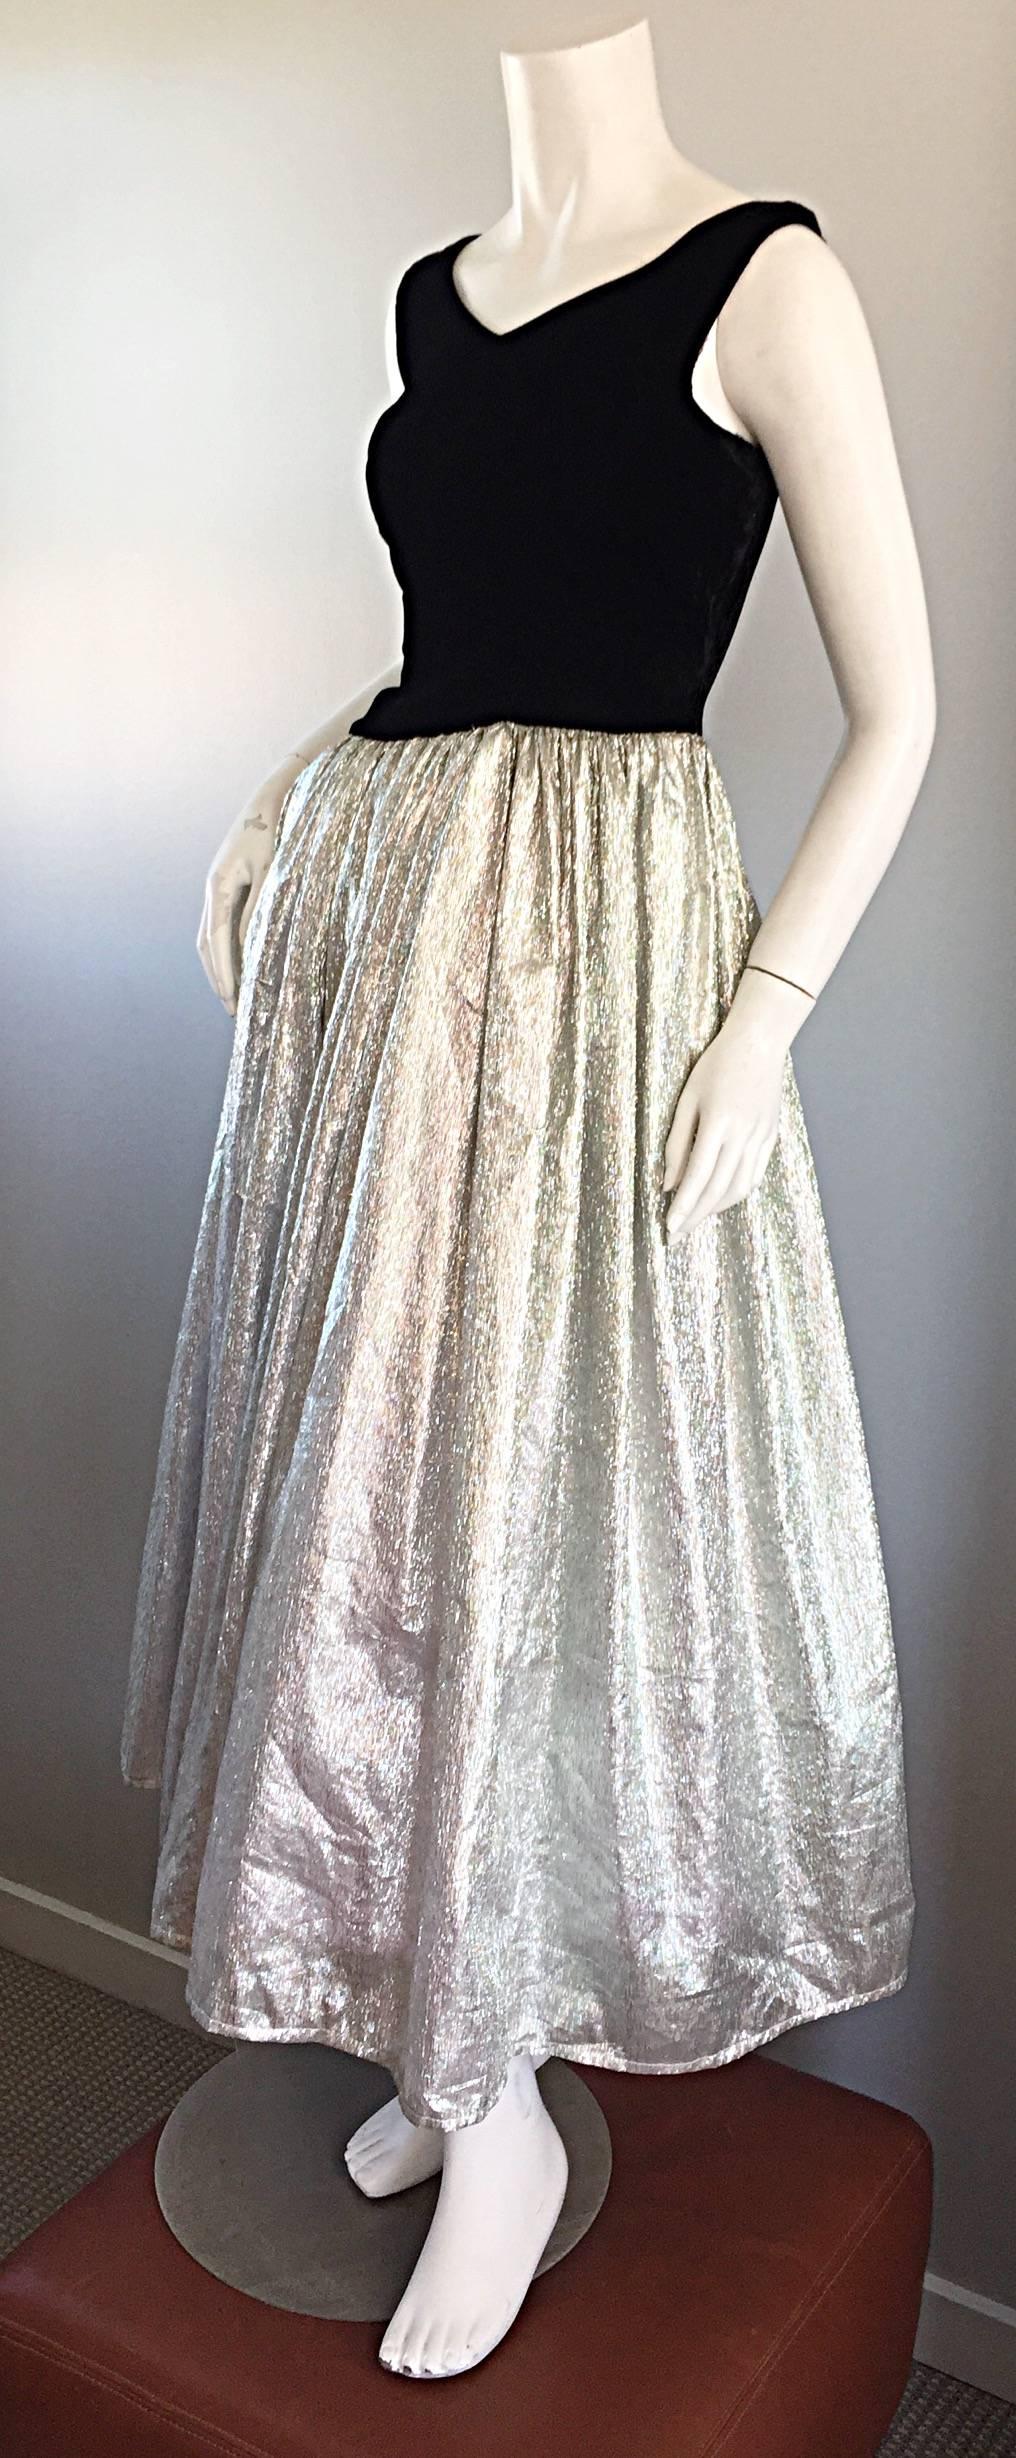 silver iridescent dress